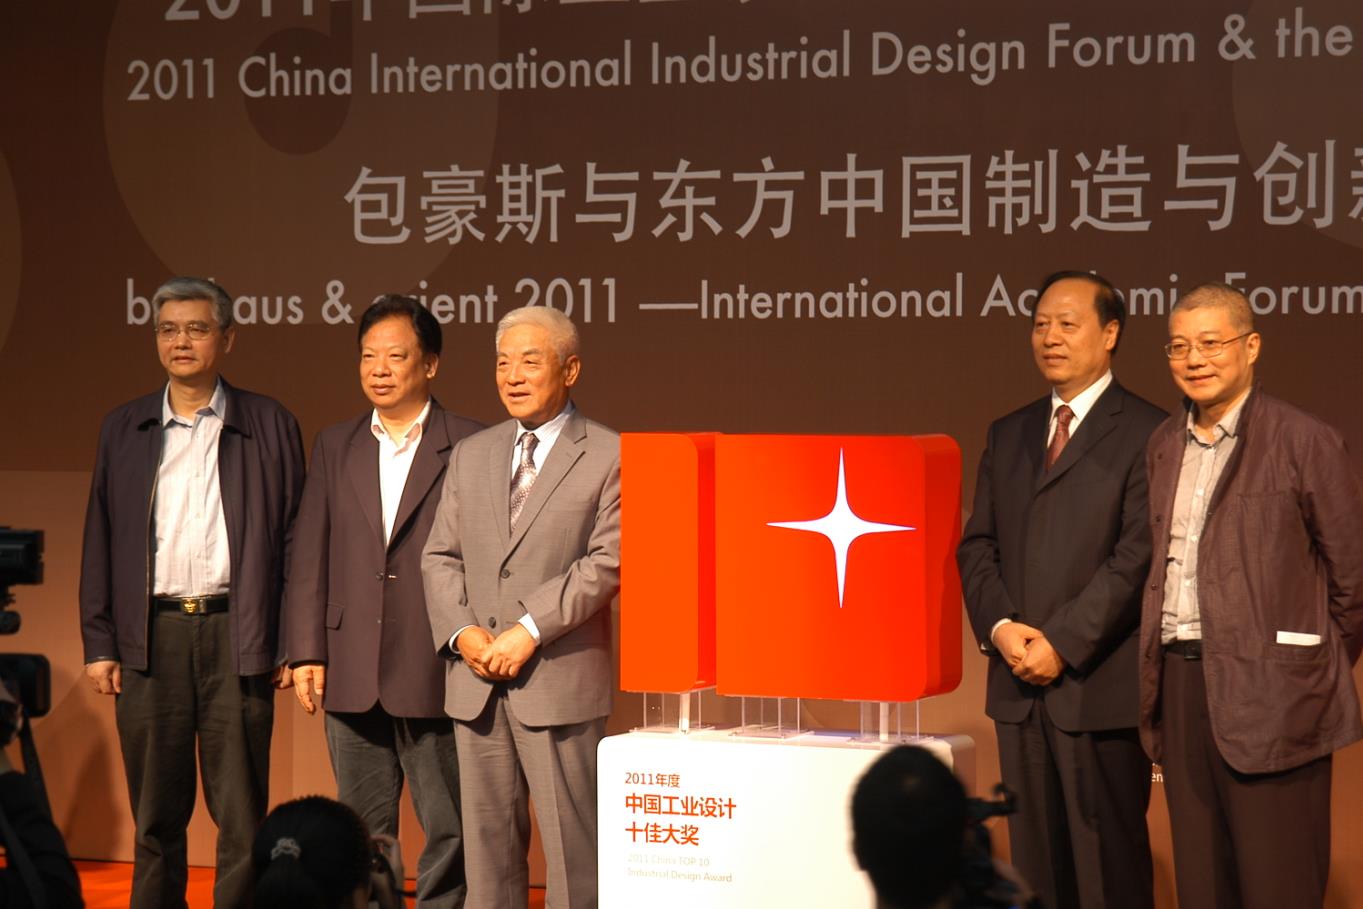 半岛体彩在线下载
设计荣获首届“中国十佳工业设计服务机构” 